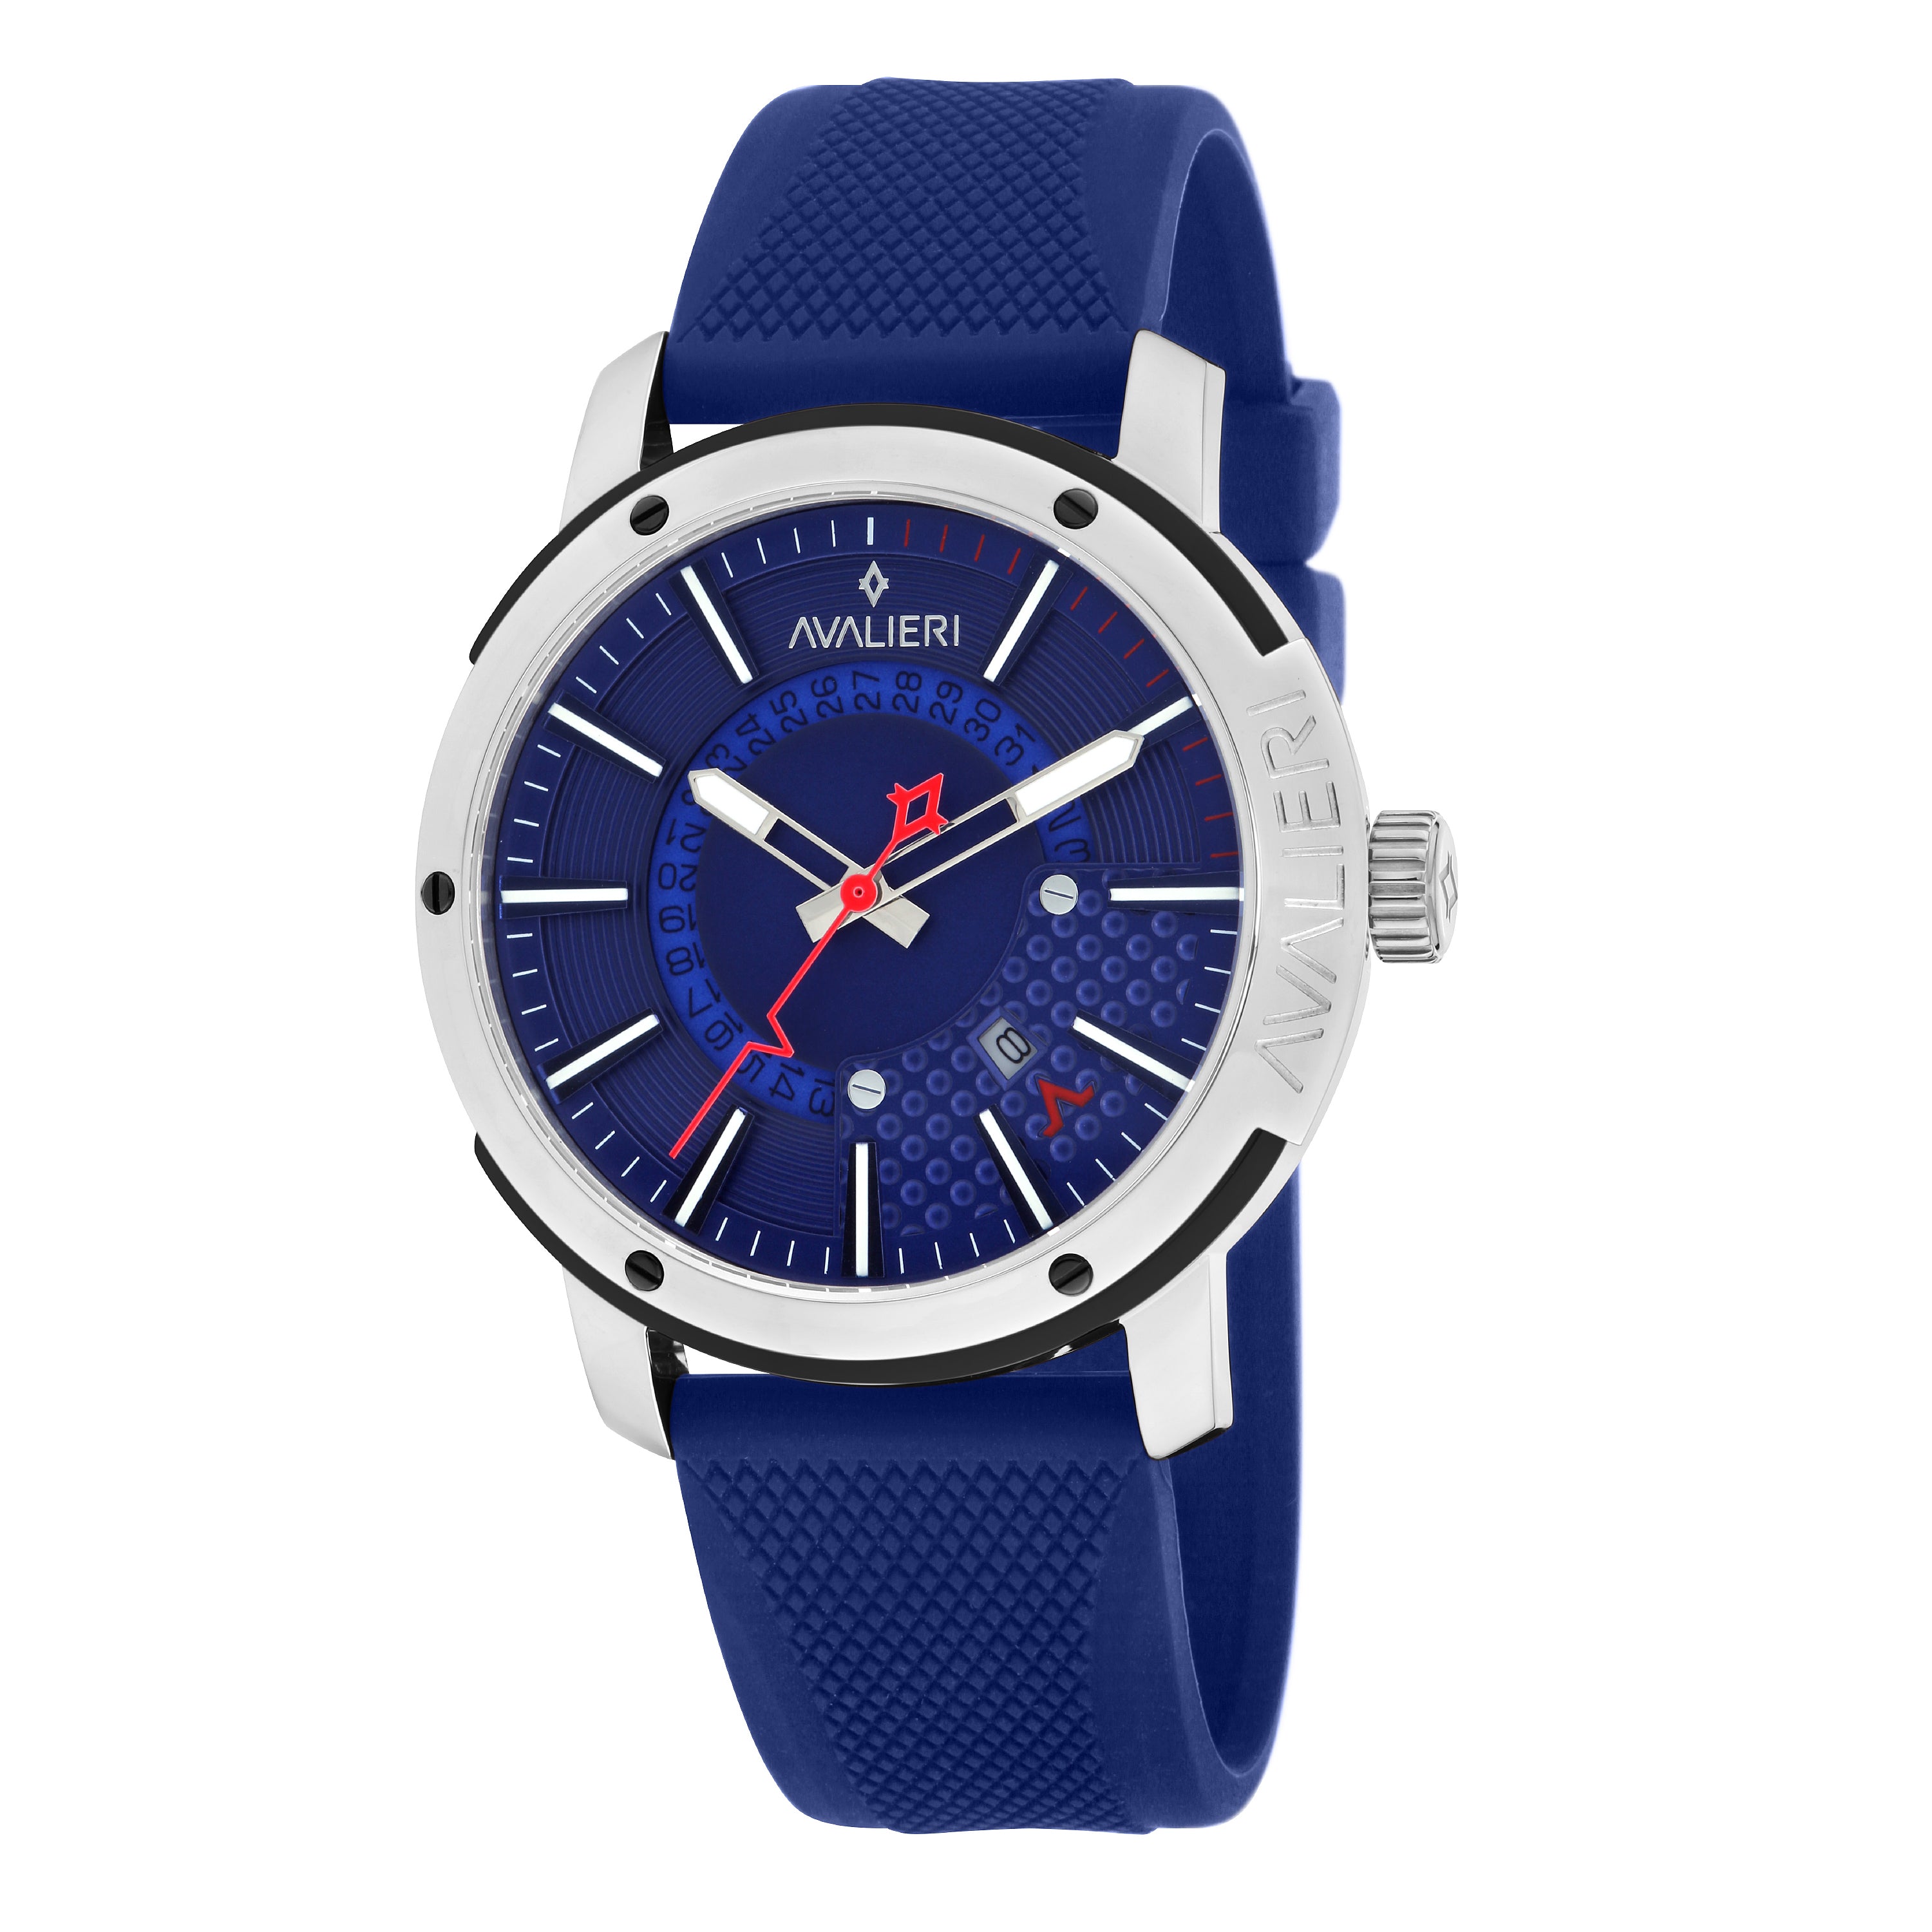 Avalieri Men's Quartz Blue Dial Watch - AV-2083B